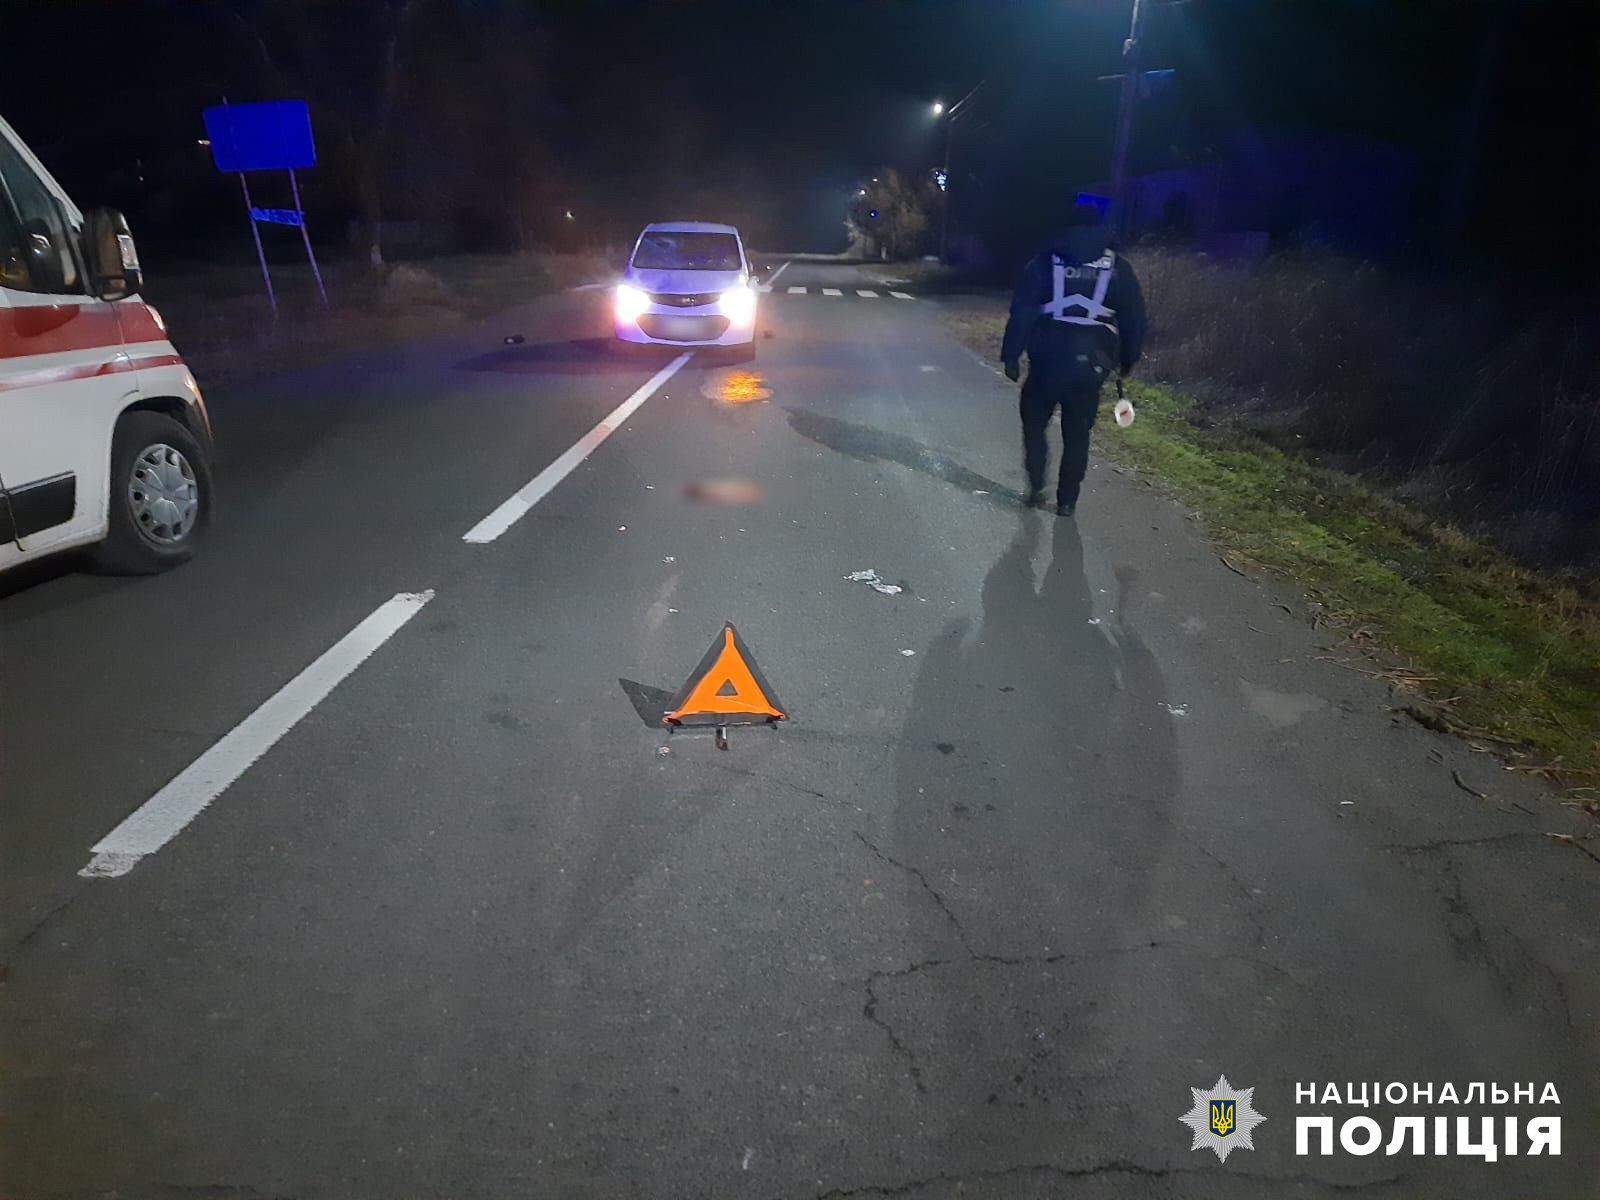 Перебегал дорогу и попал под колеса авто: в Белгород-Днестровском районе произошло смертельное ДТП